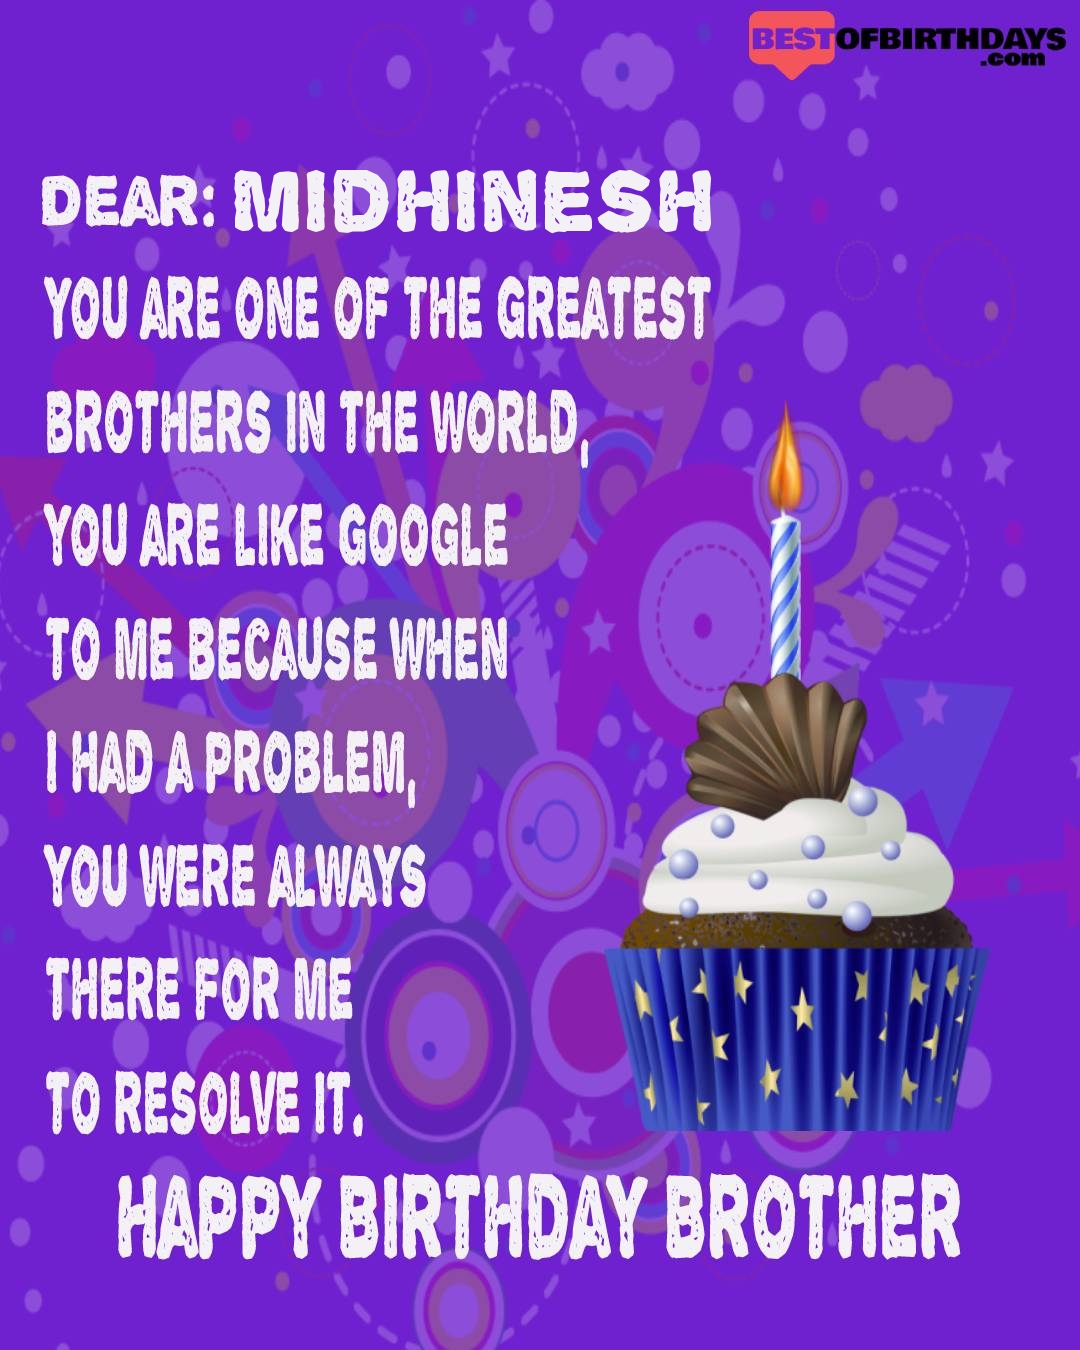 Happy birthday midhinesh bhai brother bro